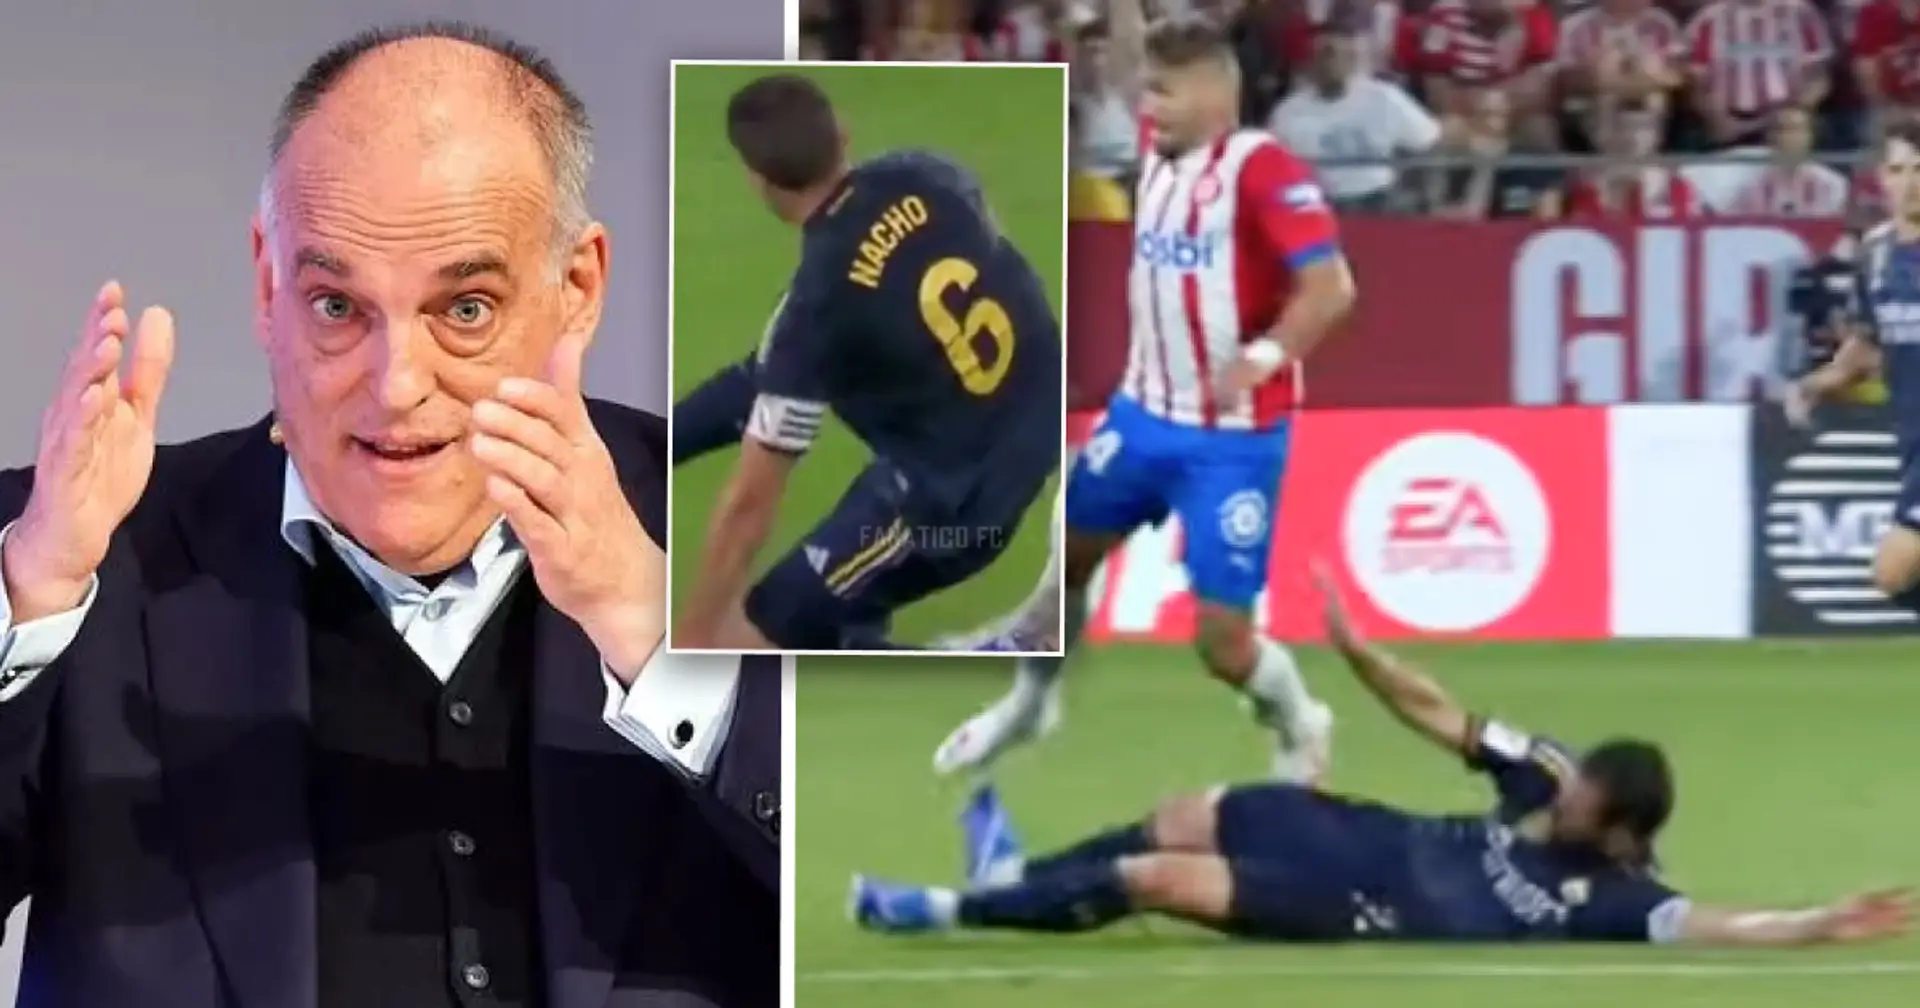 La Liga reduces suspension of Real Madrid defender after leg-breaking tackle